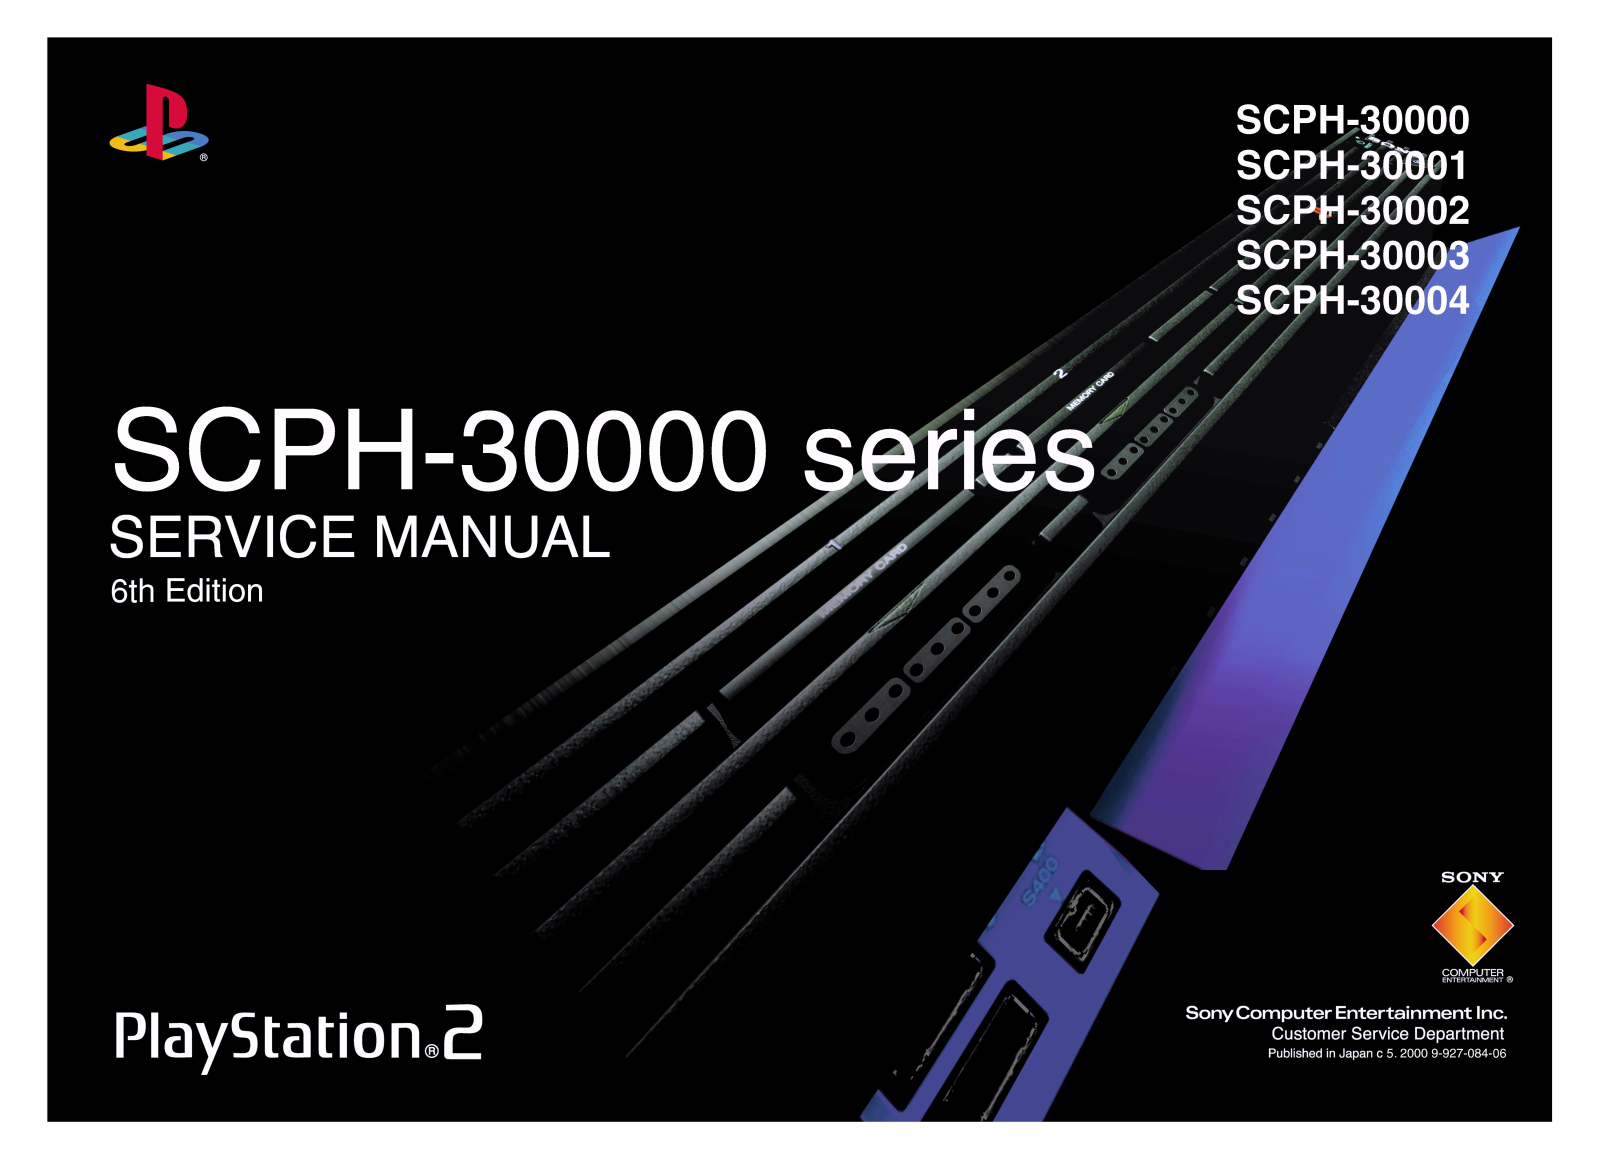 Sony SCPH-30004, SCPH-30003, SCPH-30002, SCPH-30001, SCPH-30000 Service Manual